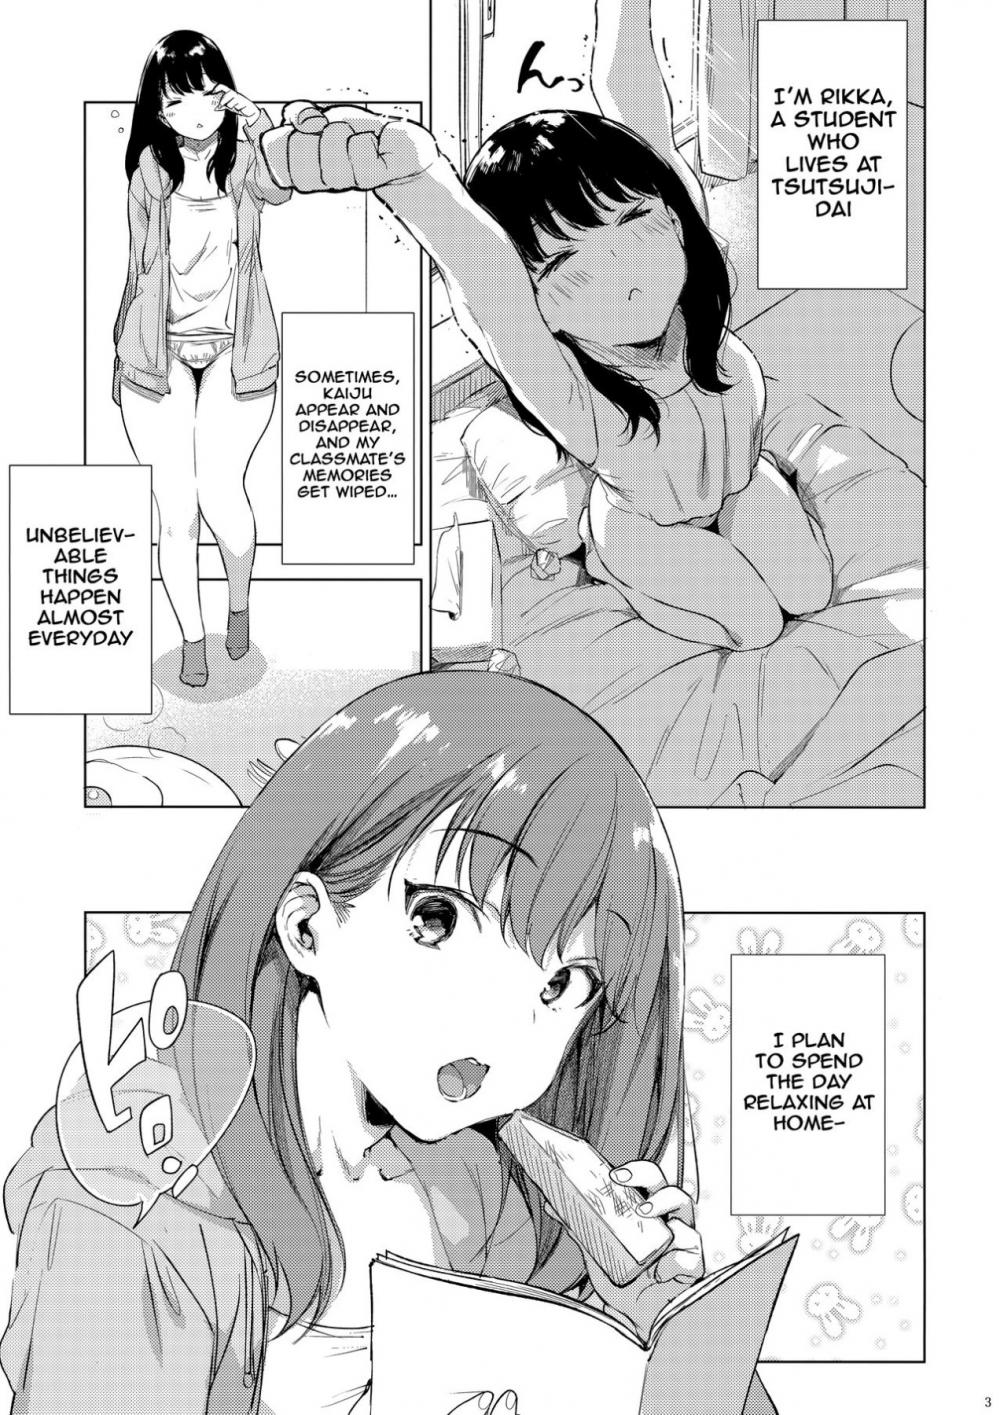 Hentai Manga Comic-Rikka ChaAaAAaAAAaaAn!!-Read-2